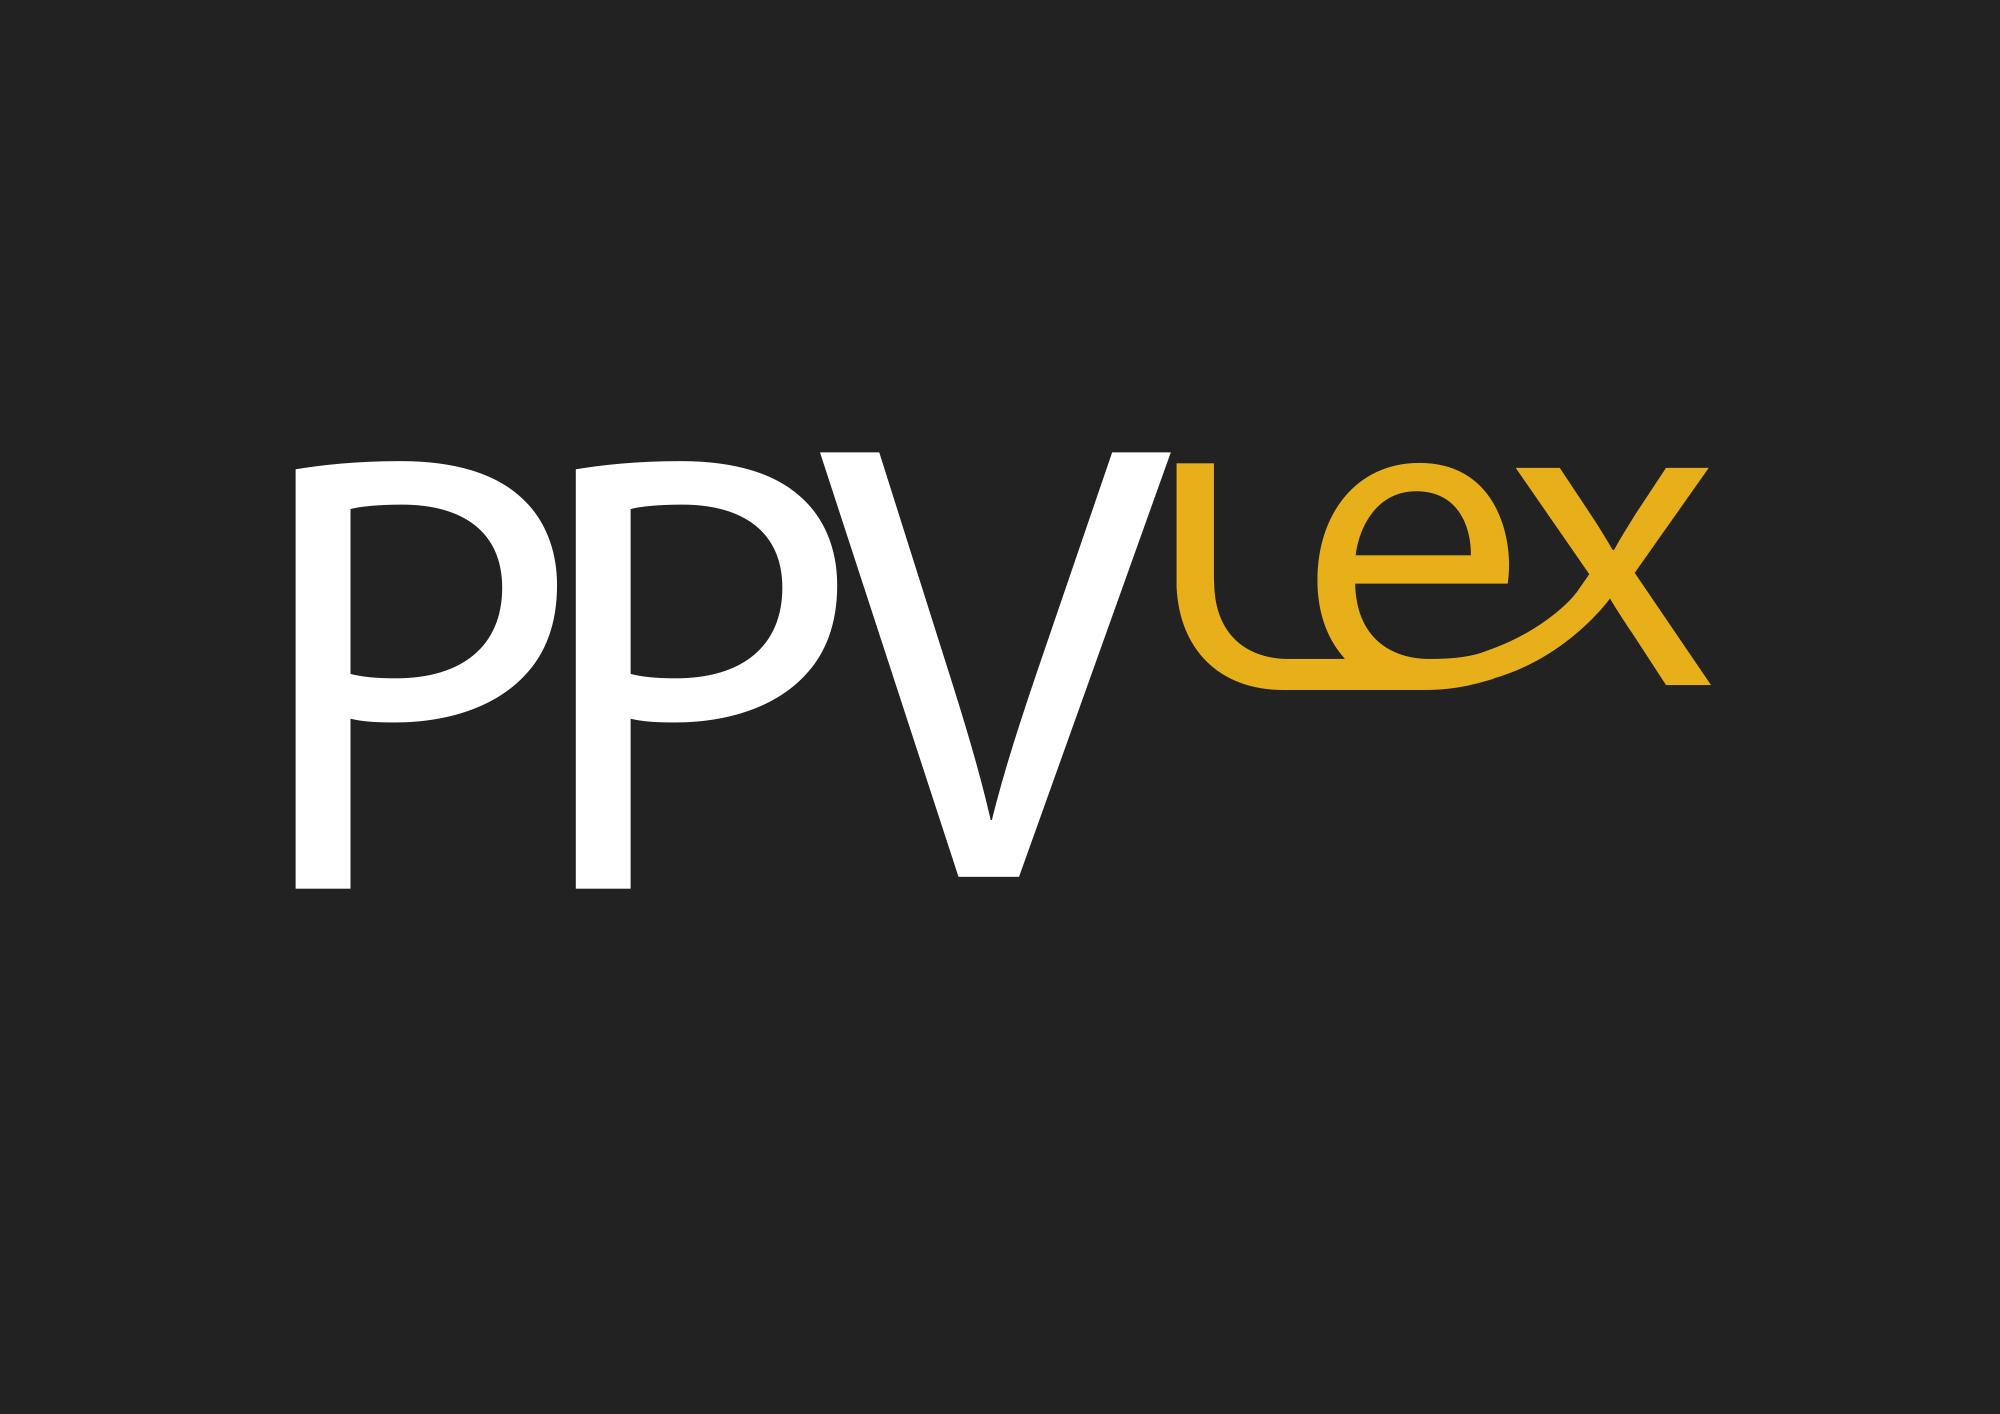 PPV Lex Law Firm Oy